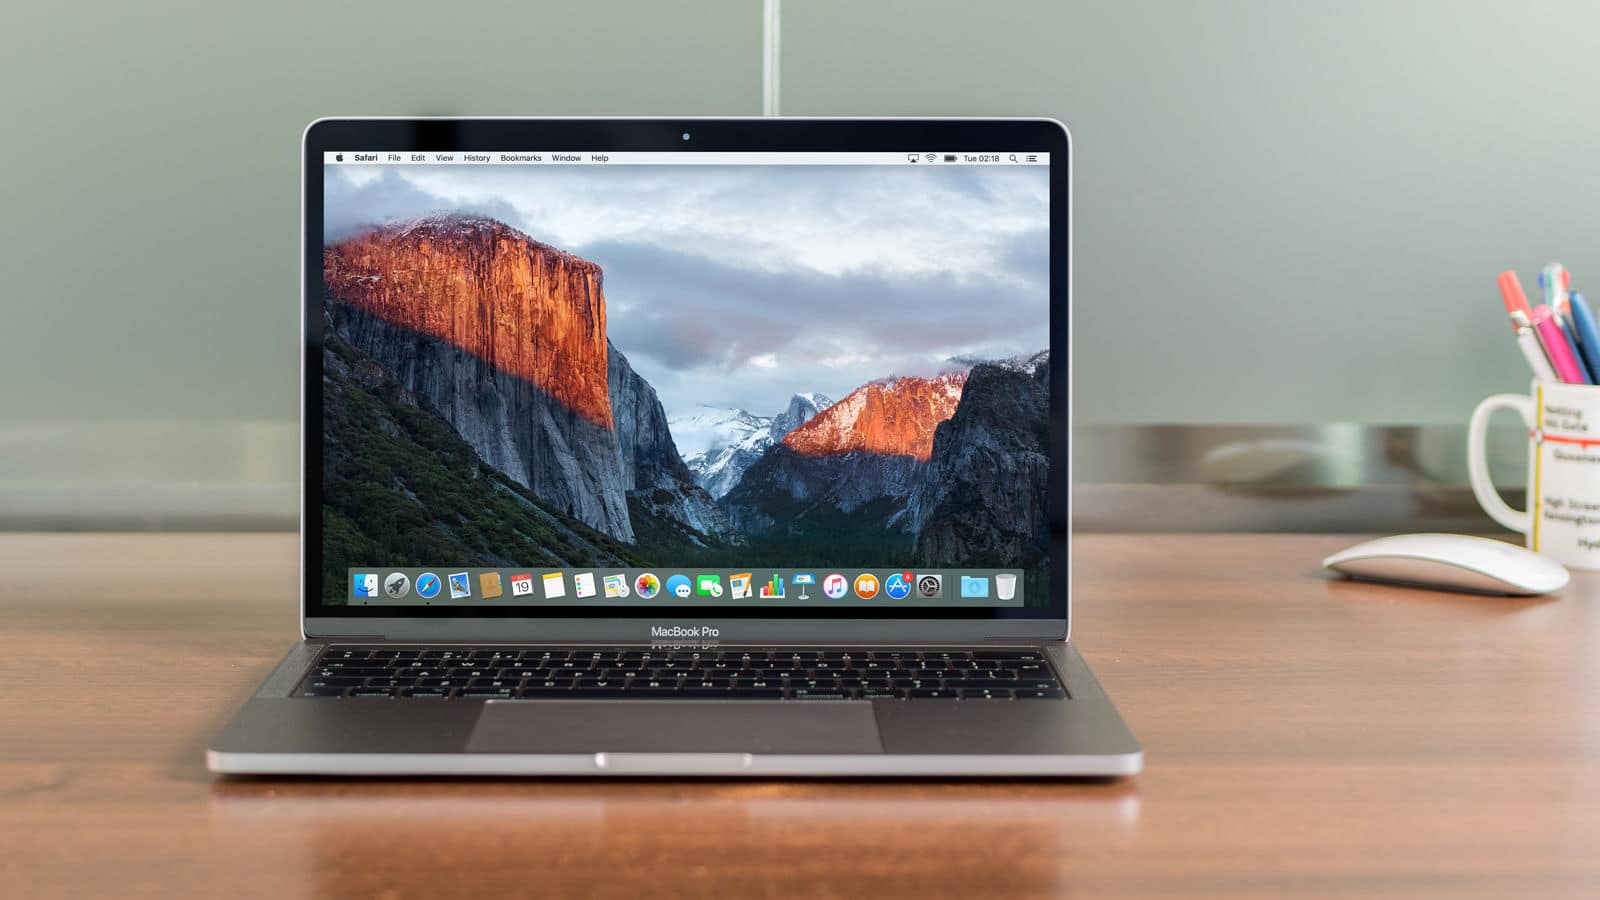 Image 1 : Le MacBook Pro 15" obtient un score de réparabilité de 1/10